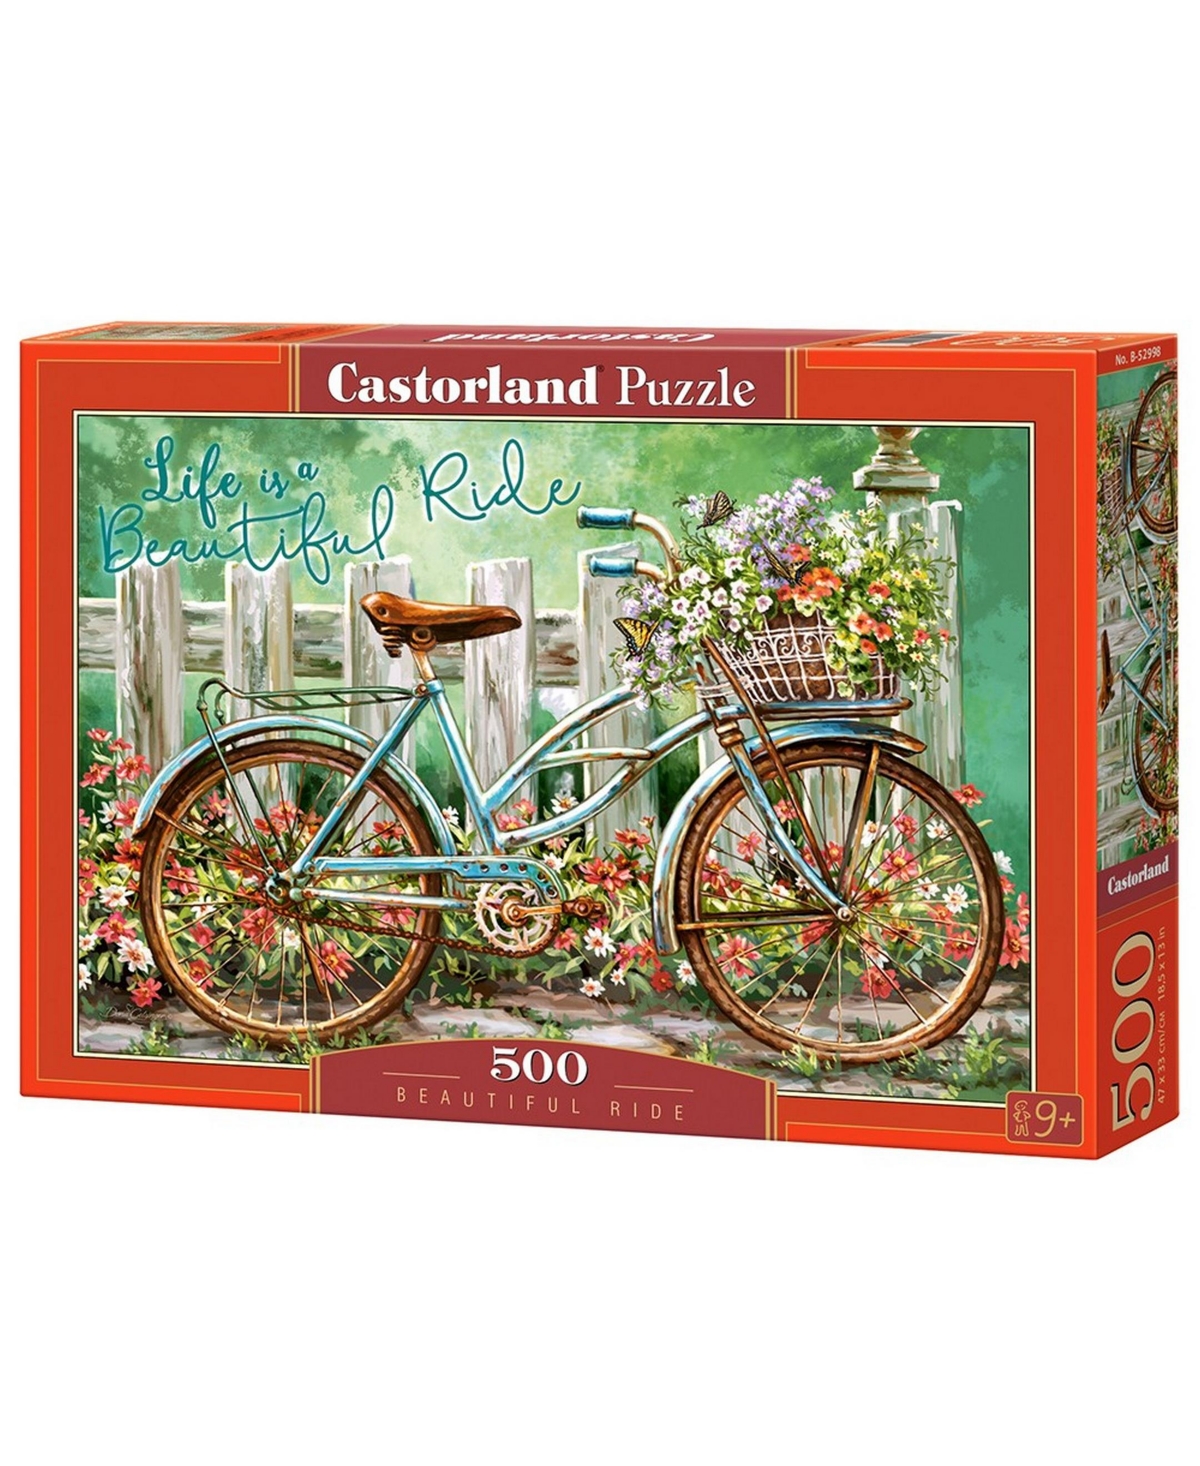 Castorland Beautiful Ride Jigsaw Puzzle Set, 500 Piece In Multicolor